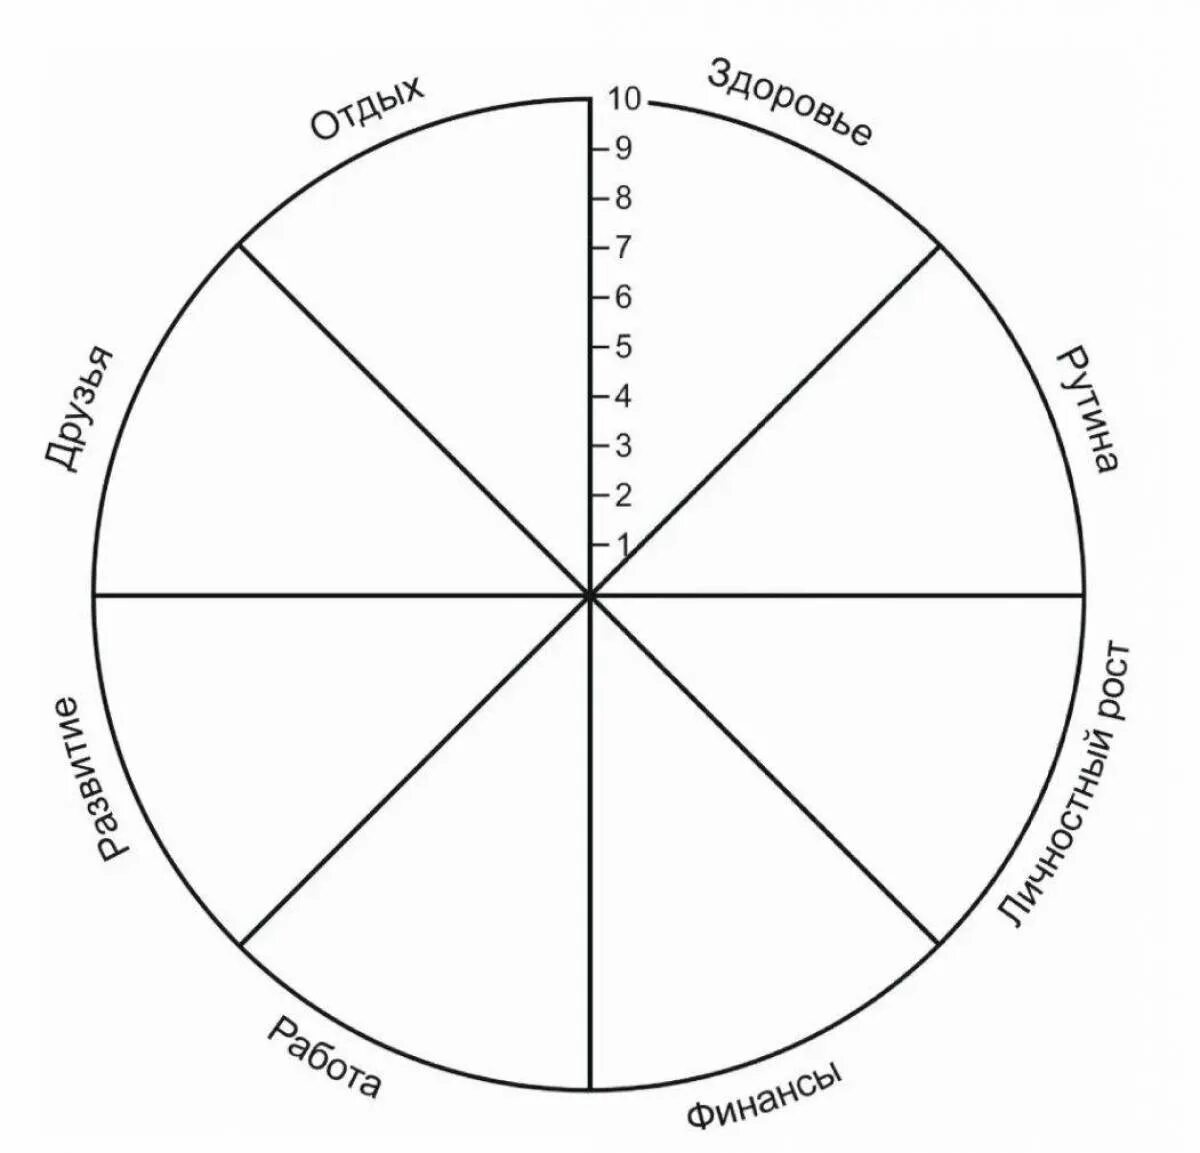 Время жизни круга. Колесо жизненного баланса 8 сфер. Схема колеса жизненного баланса. Коле/о жизненного баланса. Колесо жизни, баланс жизни (8 основных сфер).